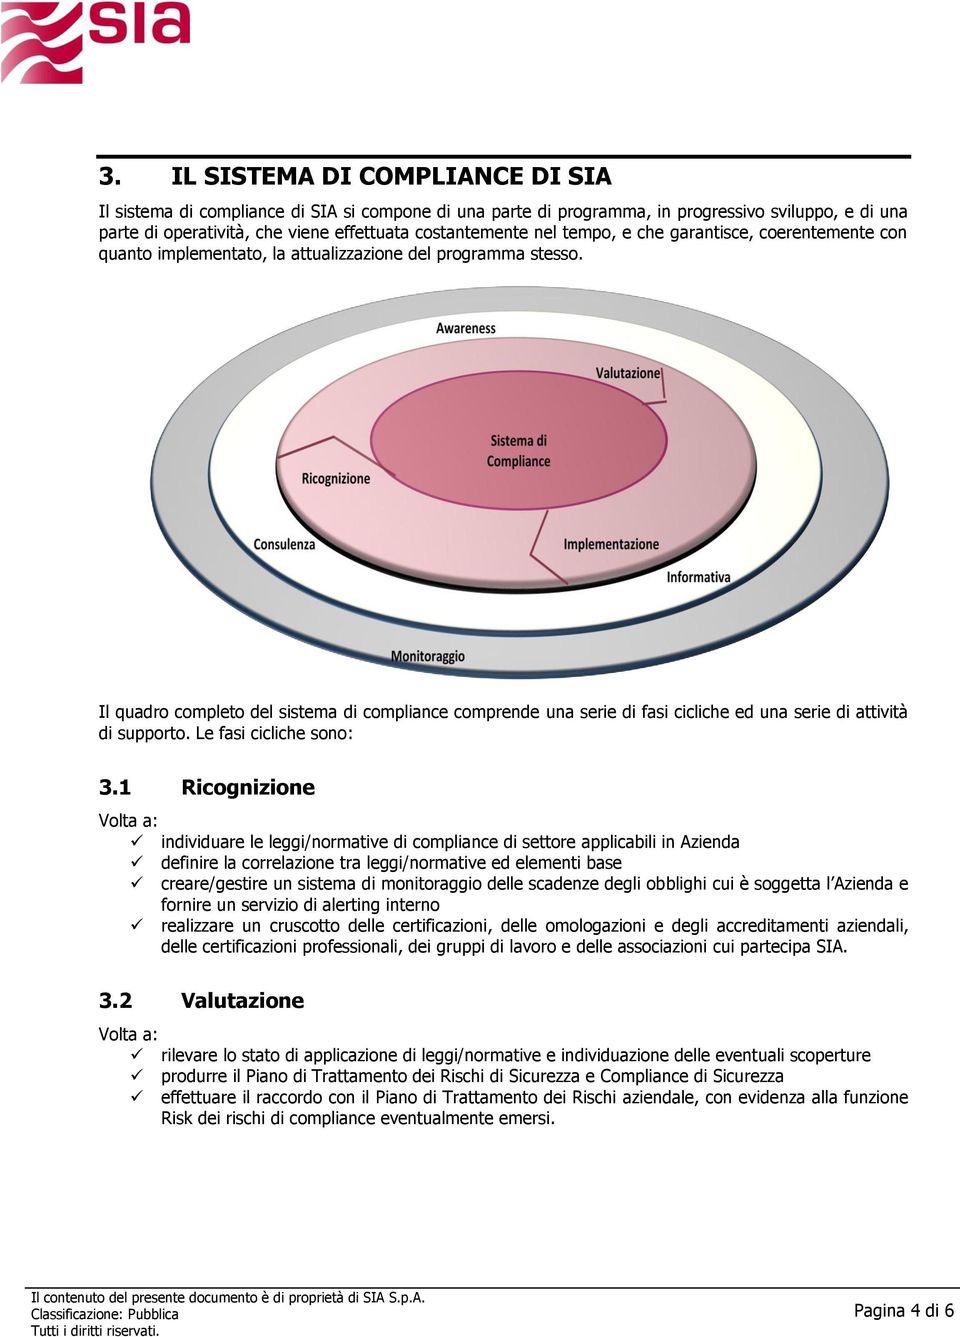 Il quadro completo del sistema di compliance comprende una serie di fasi cicliche ed una serie di attività di supporto. Le fasi cicliche sono: 3.